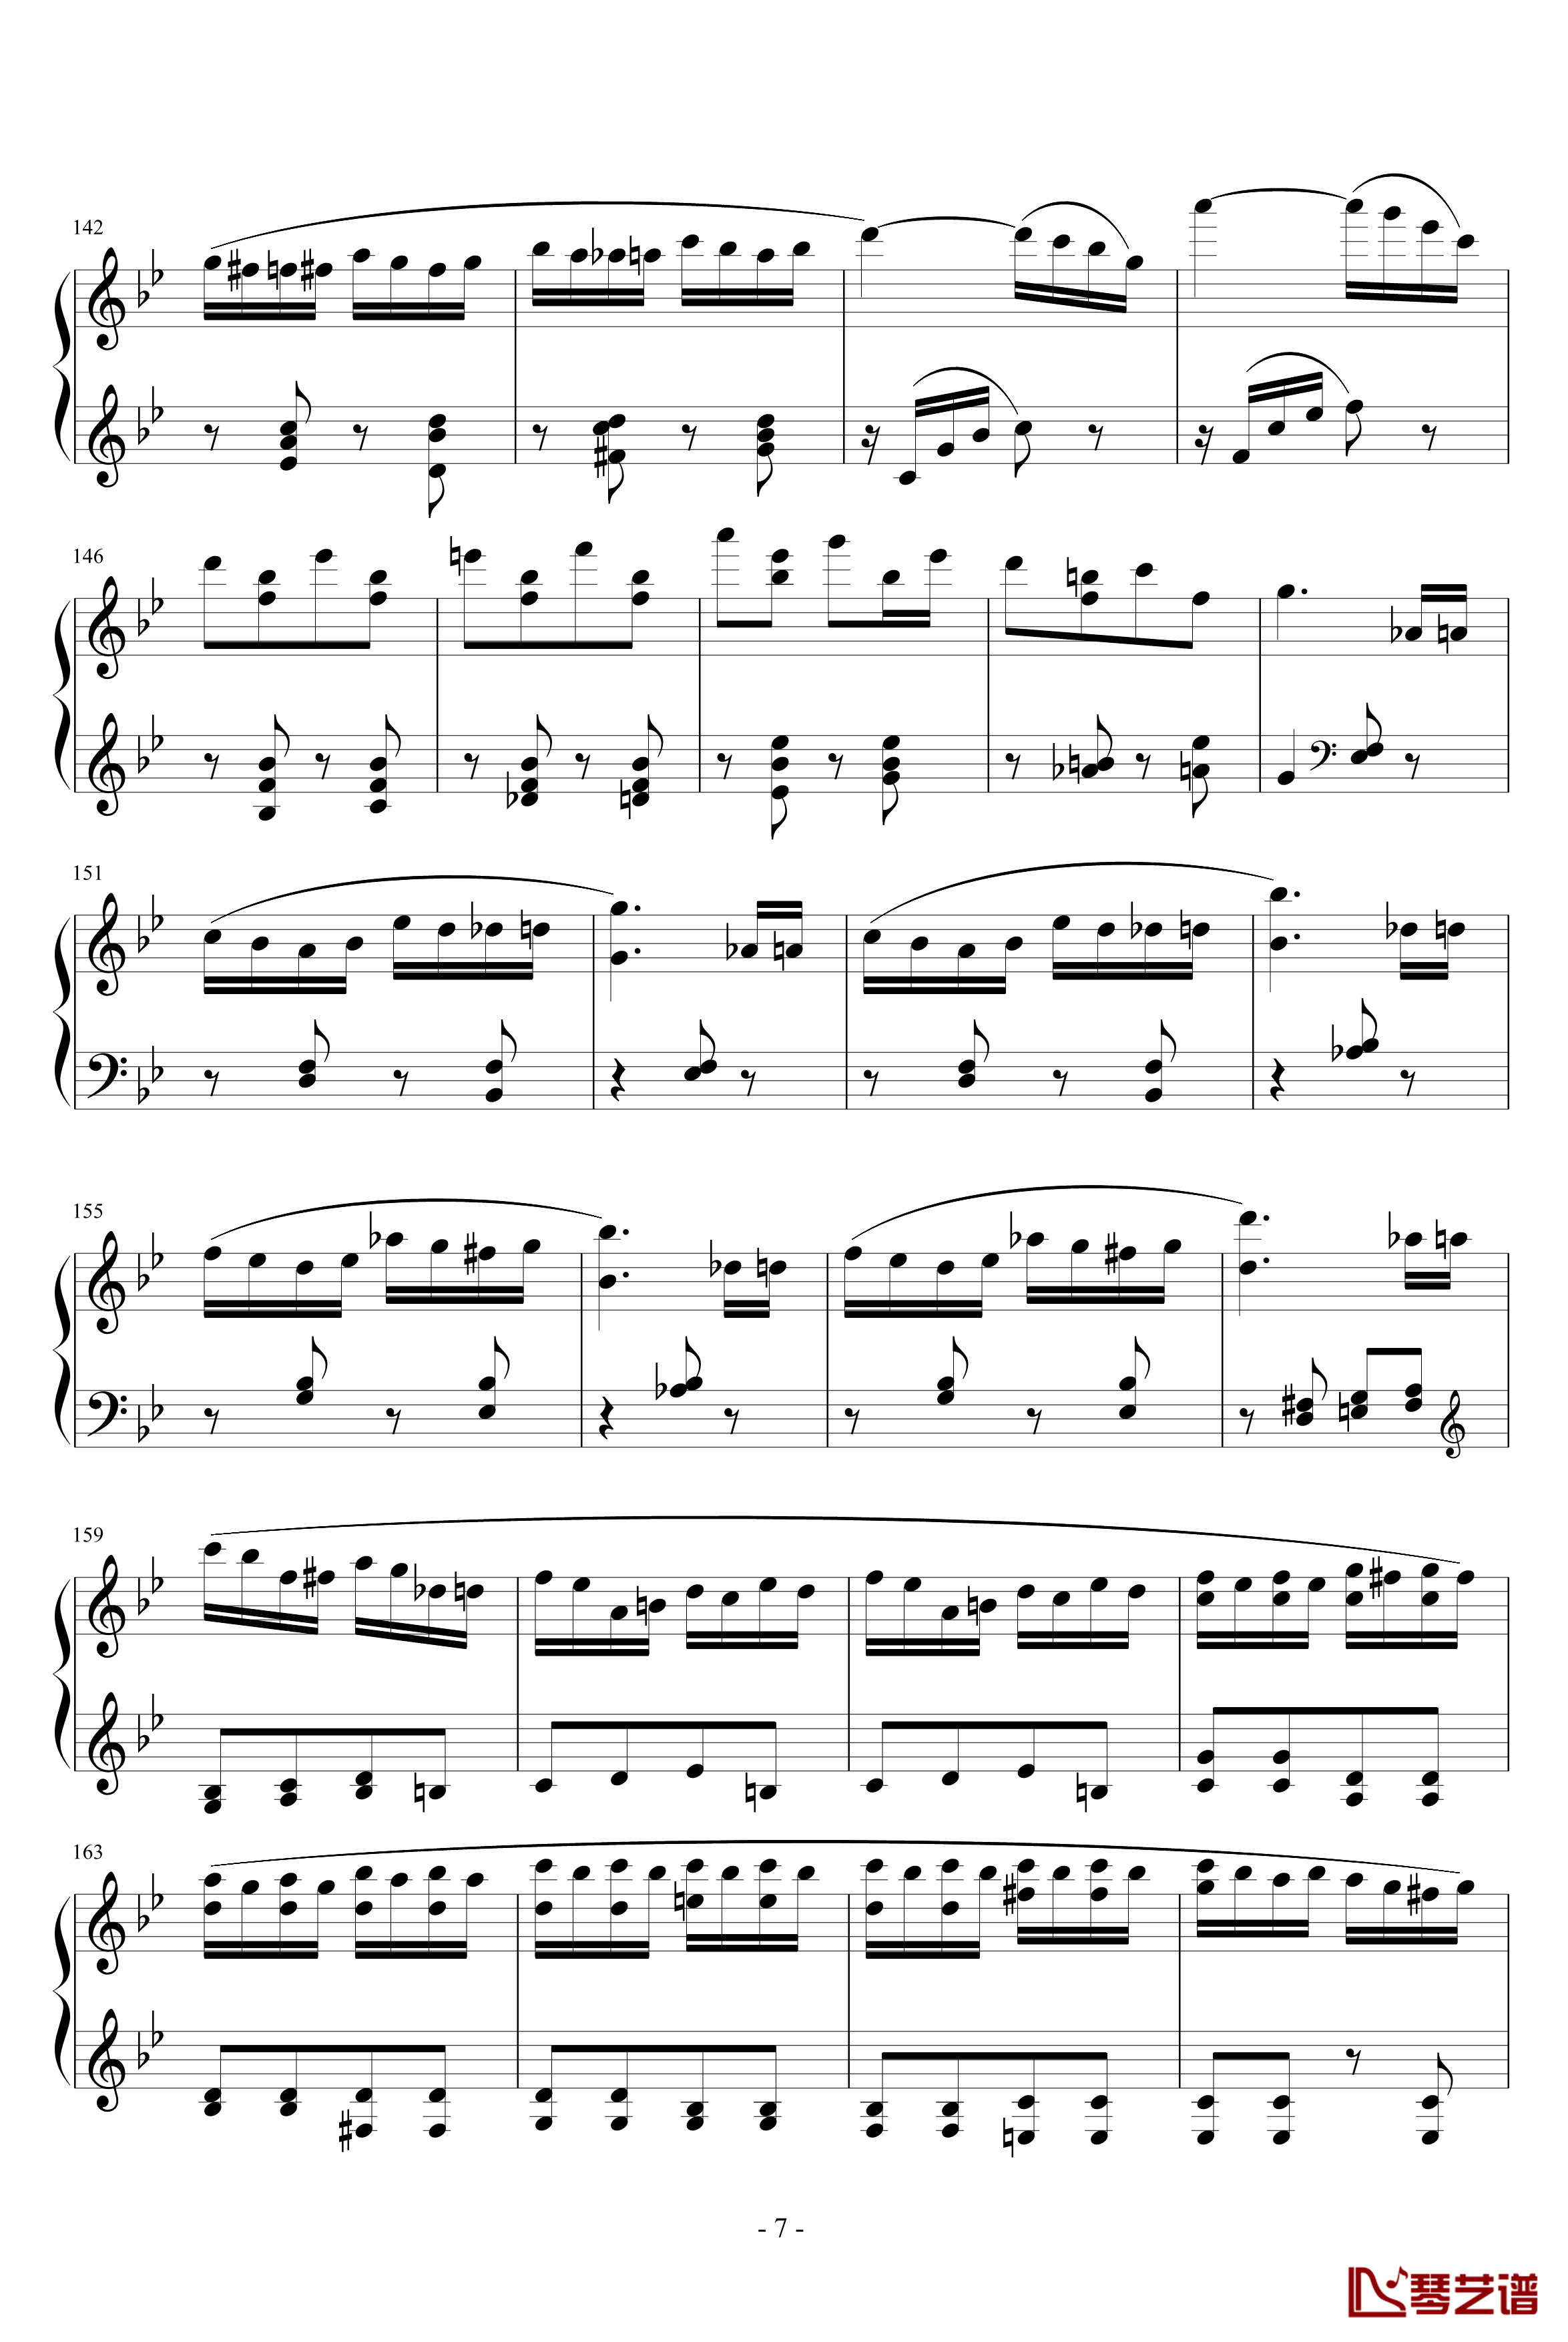 胡桃夹子序曲钢琴谱-柴科夫斯基-Peter Ilyich Tchaikovsky7